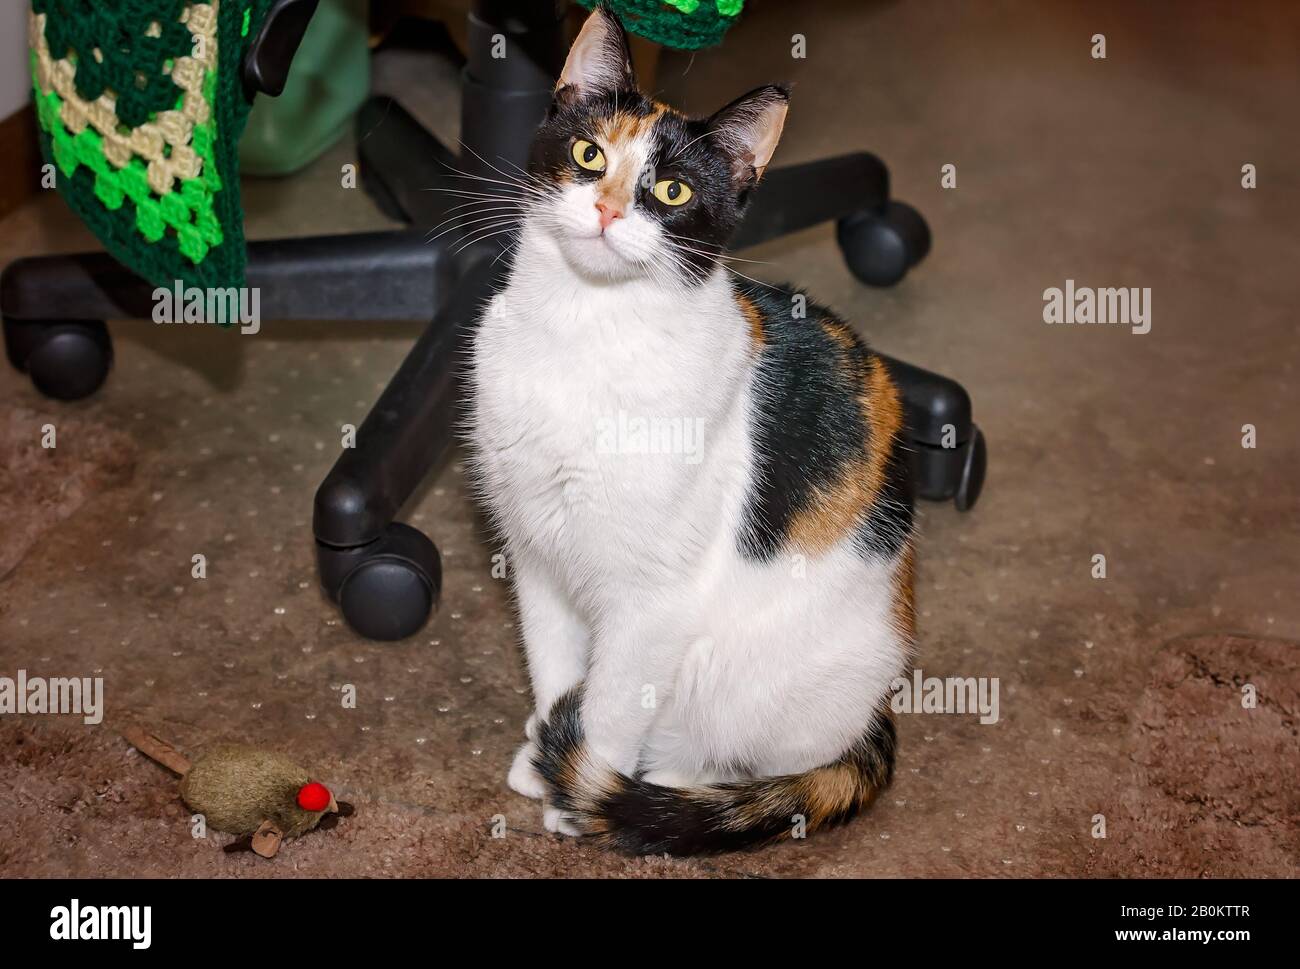 La zucca, un gatto calico, si trova sul pavimento con una catnip house in un ufficio domestico, 5 gennaio 2016, a Coden, Alabama. Foto Stock